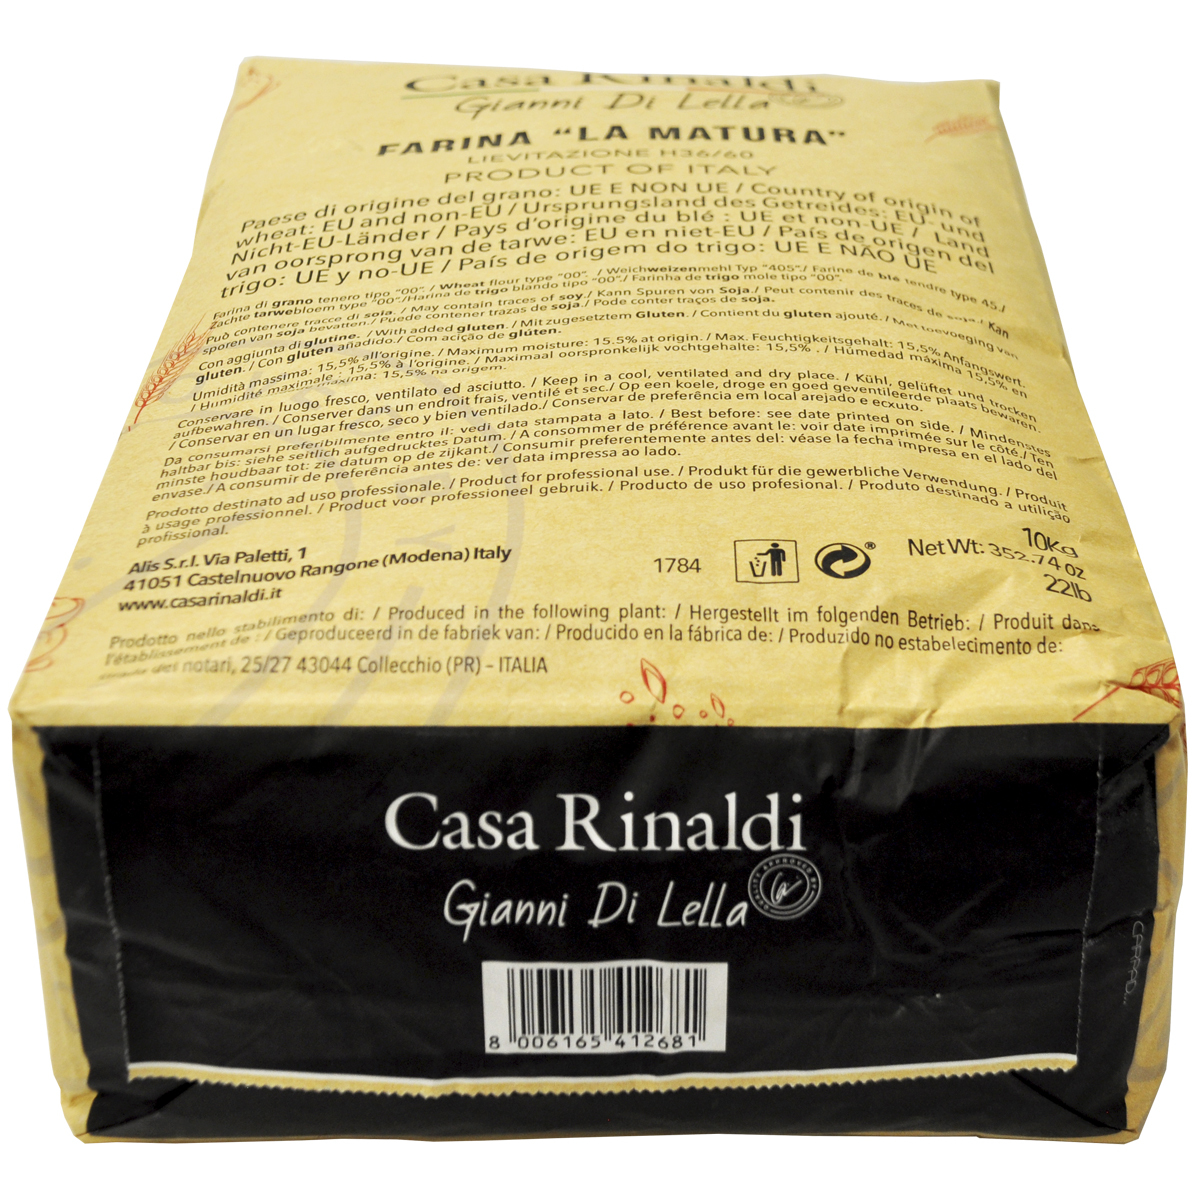 Мука Casa Rinaldi пшеничная из мягких сортов пшеницы типа 00 FARINA LA MATURA / H 36/60  10кг